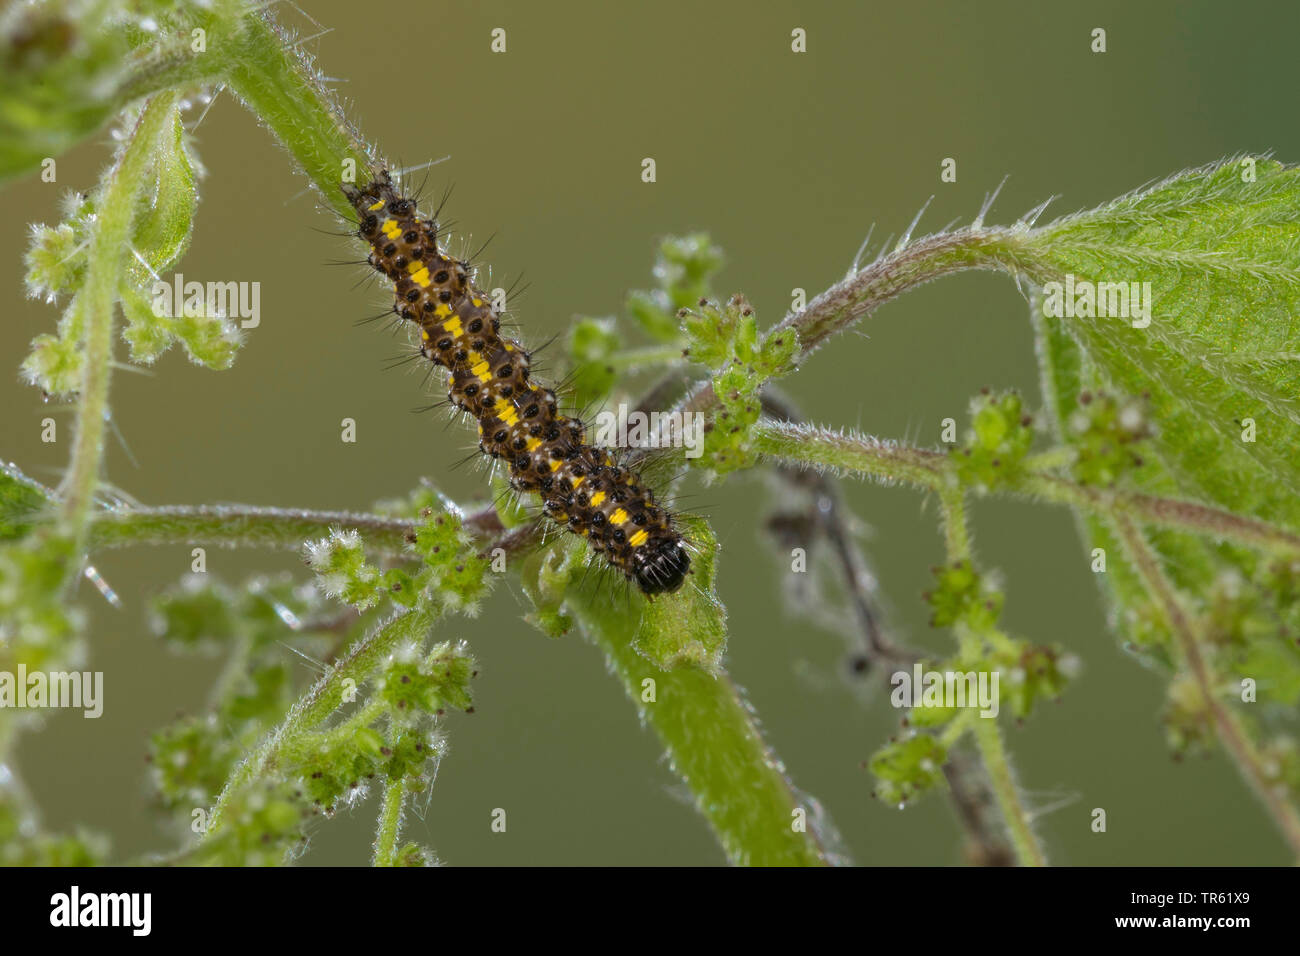 (Callimorpha dominula tiger écarlate, Panaxia dominula), Caterpillar l'alimentation d'une feuille, vue de dessus, Allemagne Banque D'Images